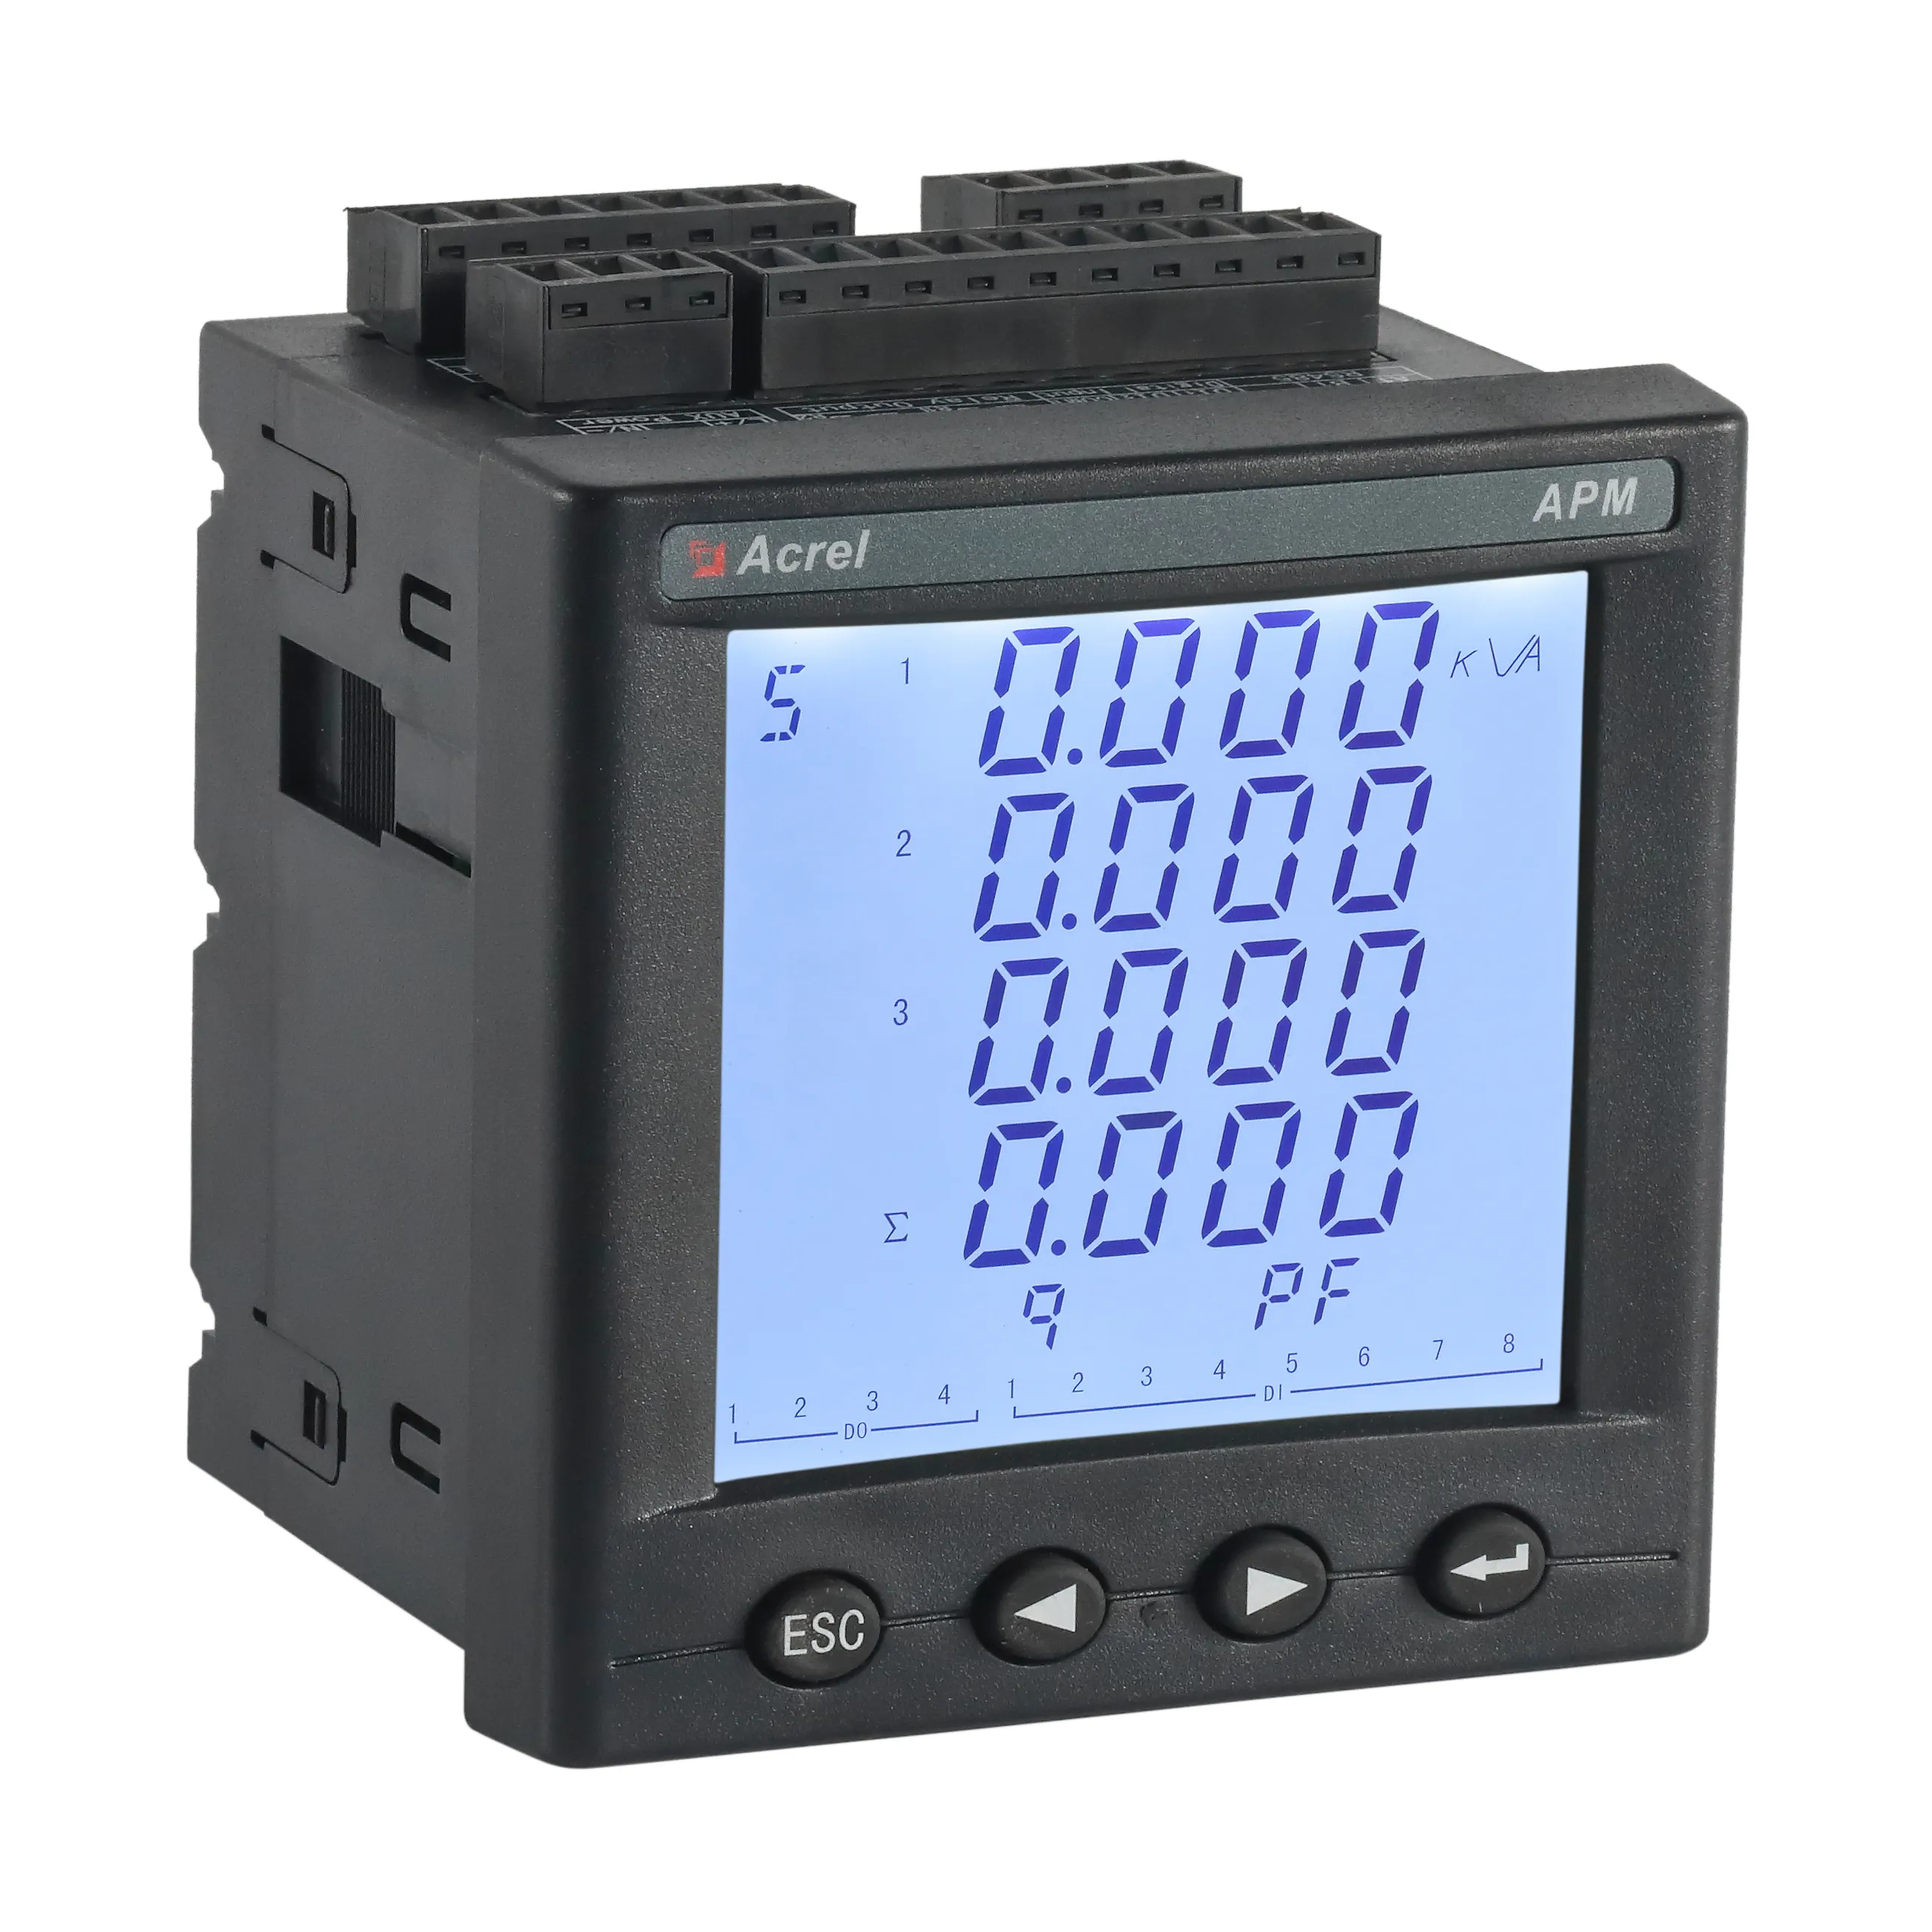 Compteur électrique numérique Apm800 3 phases rs232, analyseur de qualité du réseau électrique